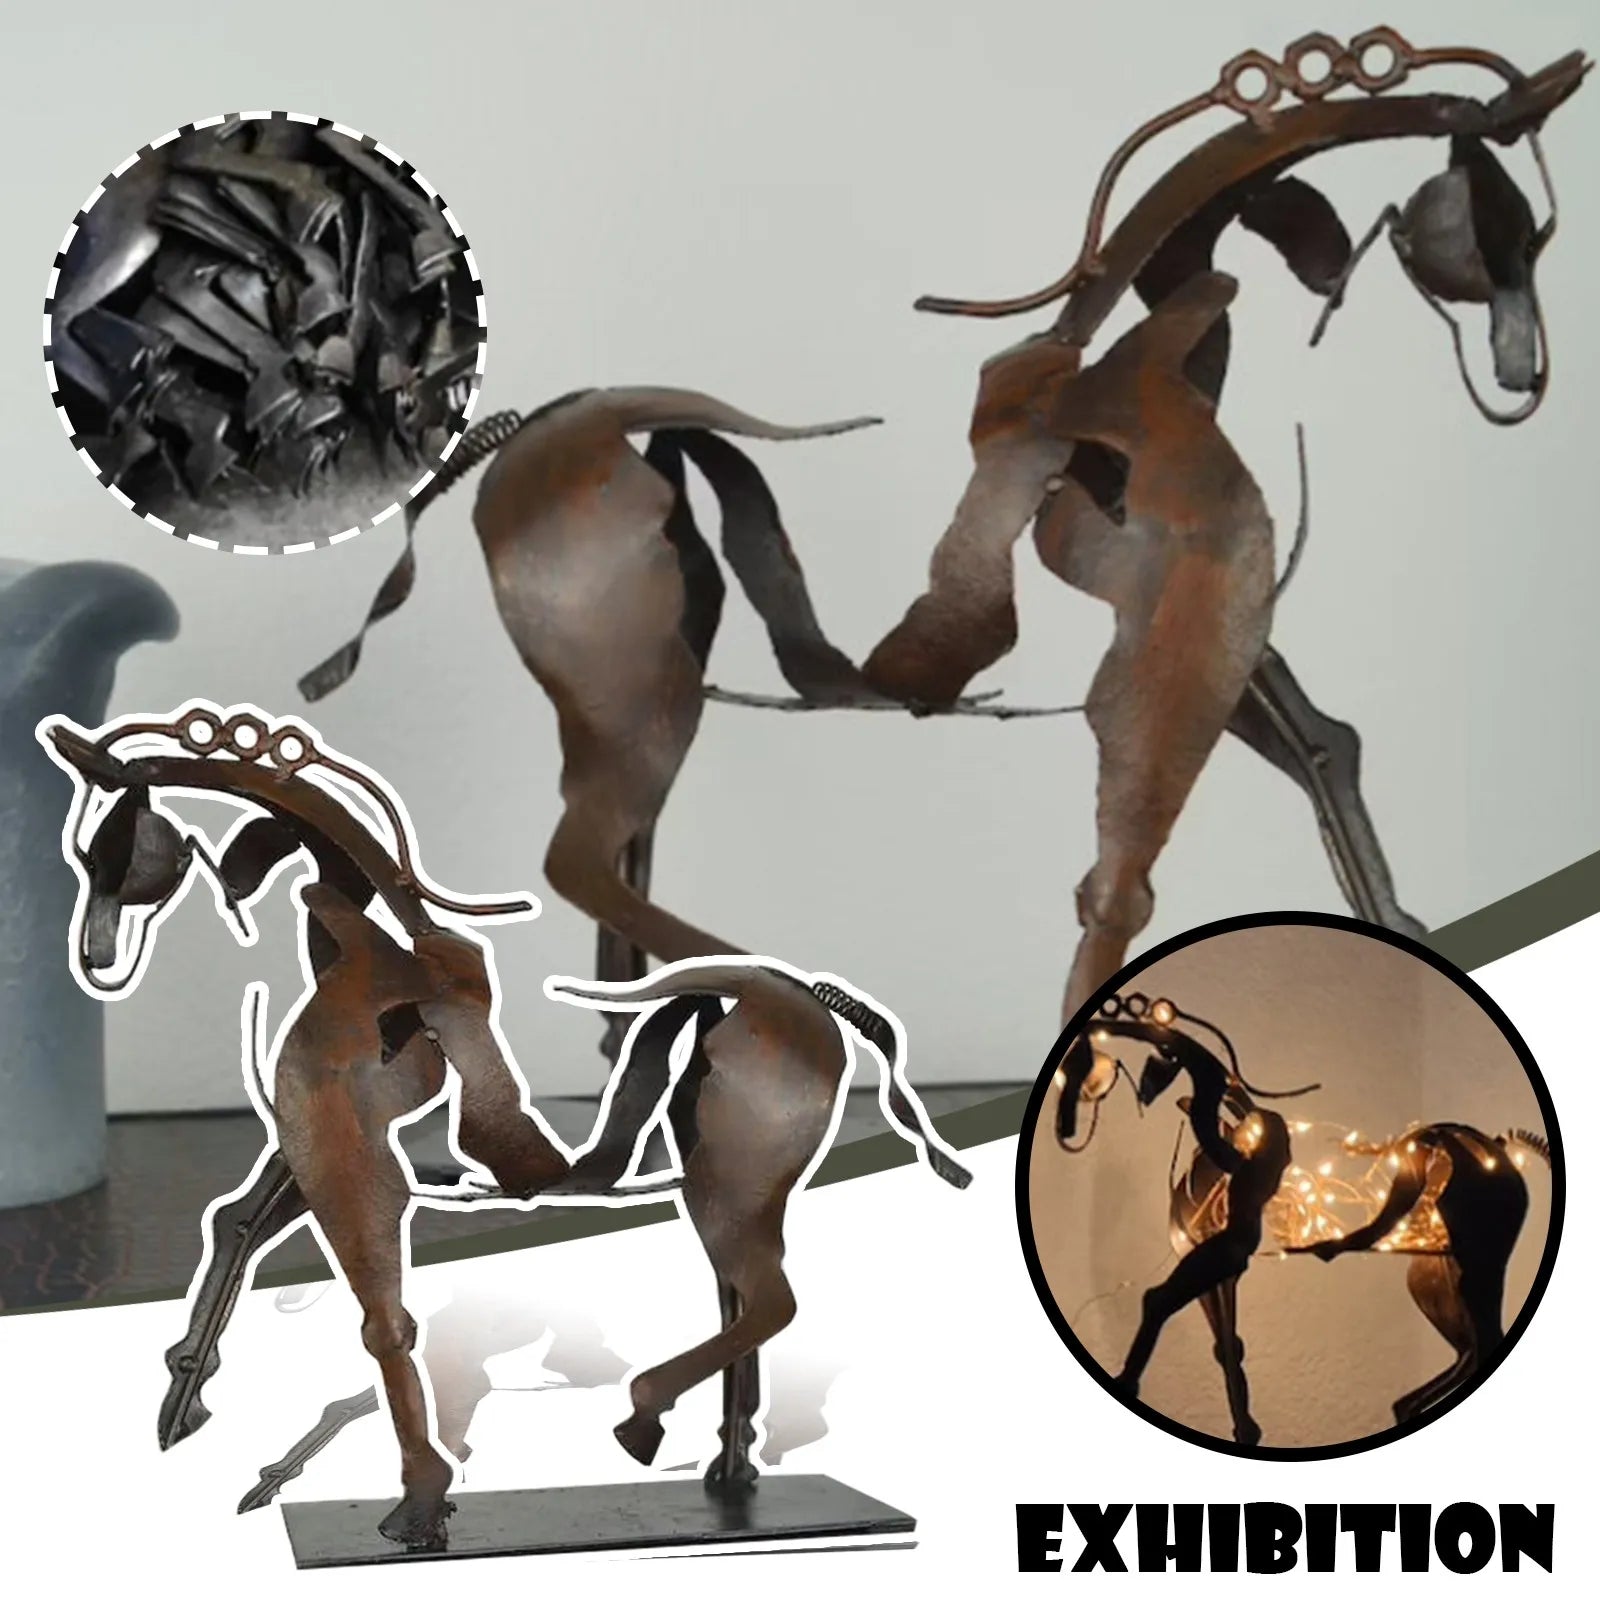 Metaal driedimensionaal openwork adonis-paard beeldhouwwerk paarden beeldhouwkunst-adonis bureaublad decoratieve ornamenten